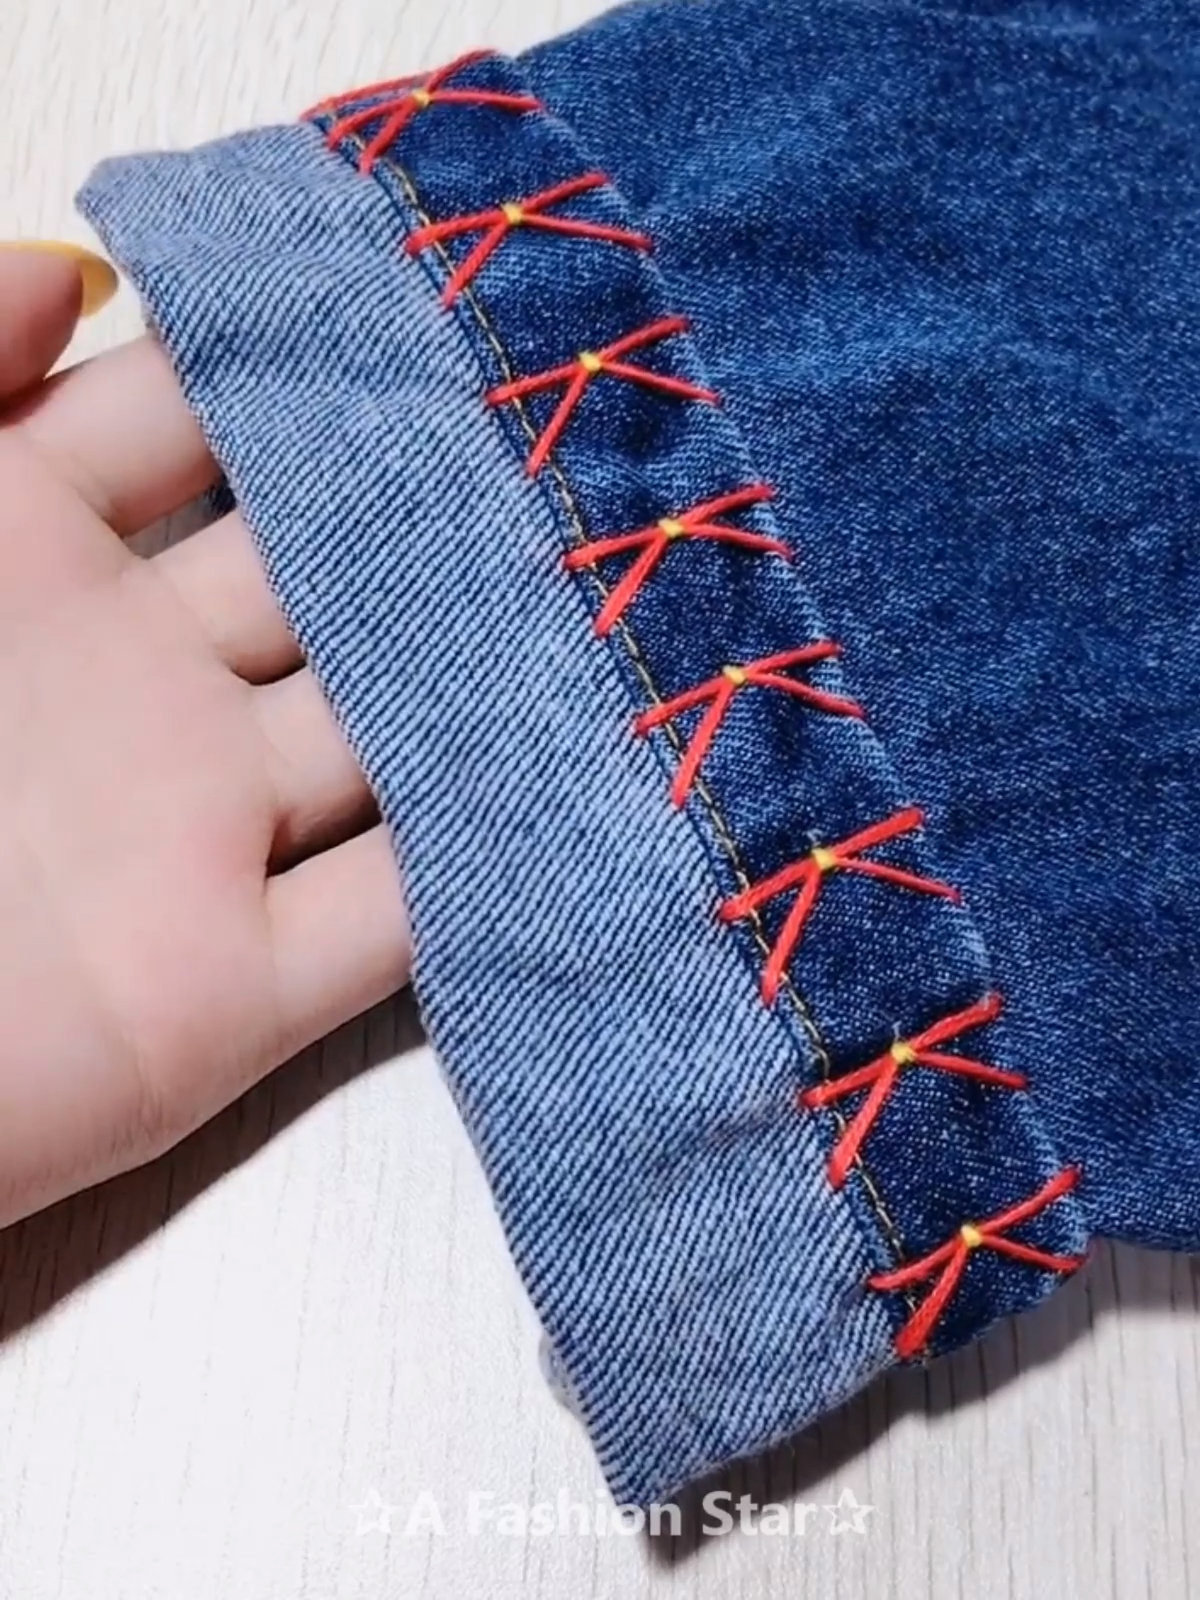 8 Easy DIY Sewing Hacks - DIY Life Hacks -   16 DIY Clothes Videos scarf ideas